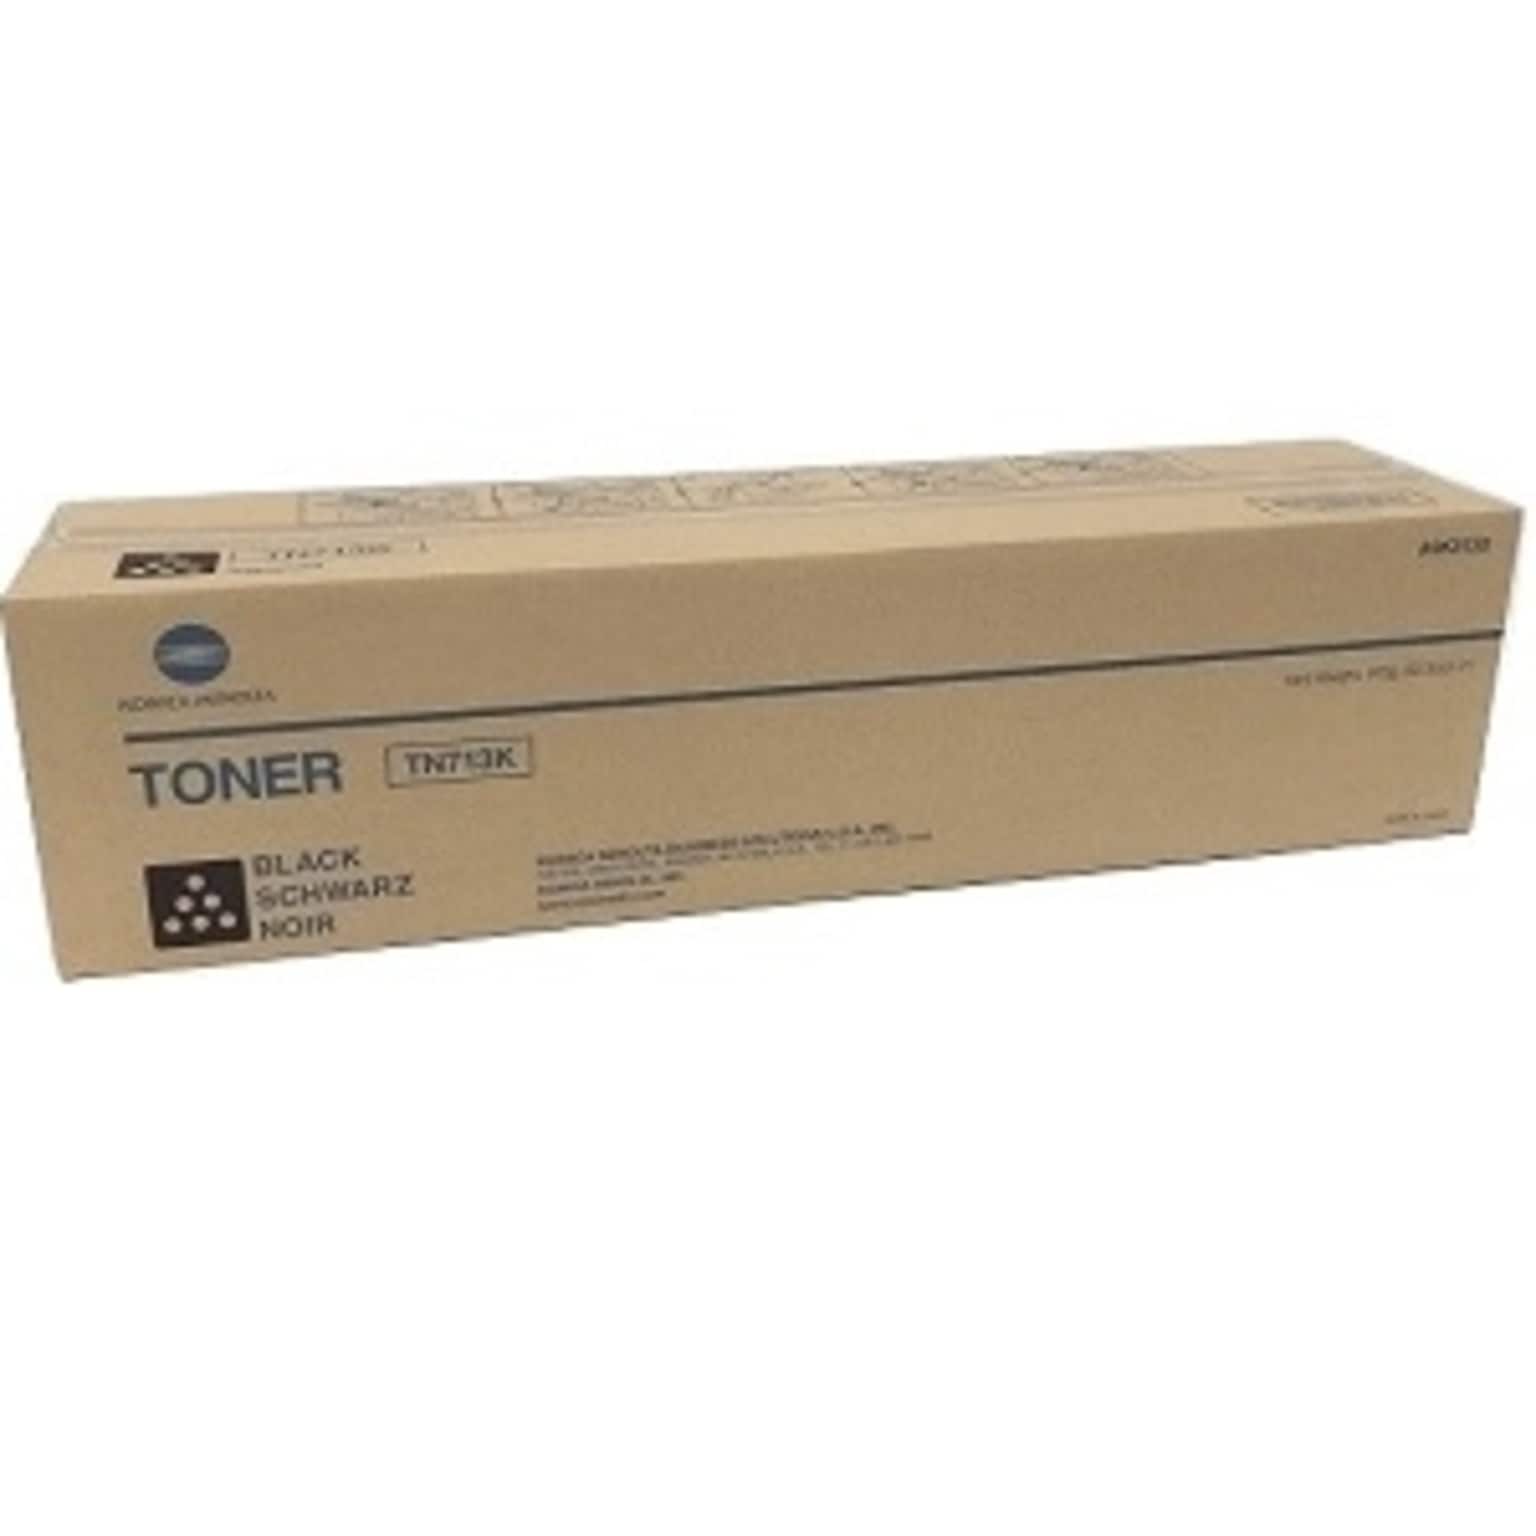 Konica Minolta TN713K Black Toner Cartridge, Standard Yield, Proprietary